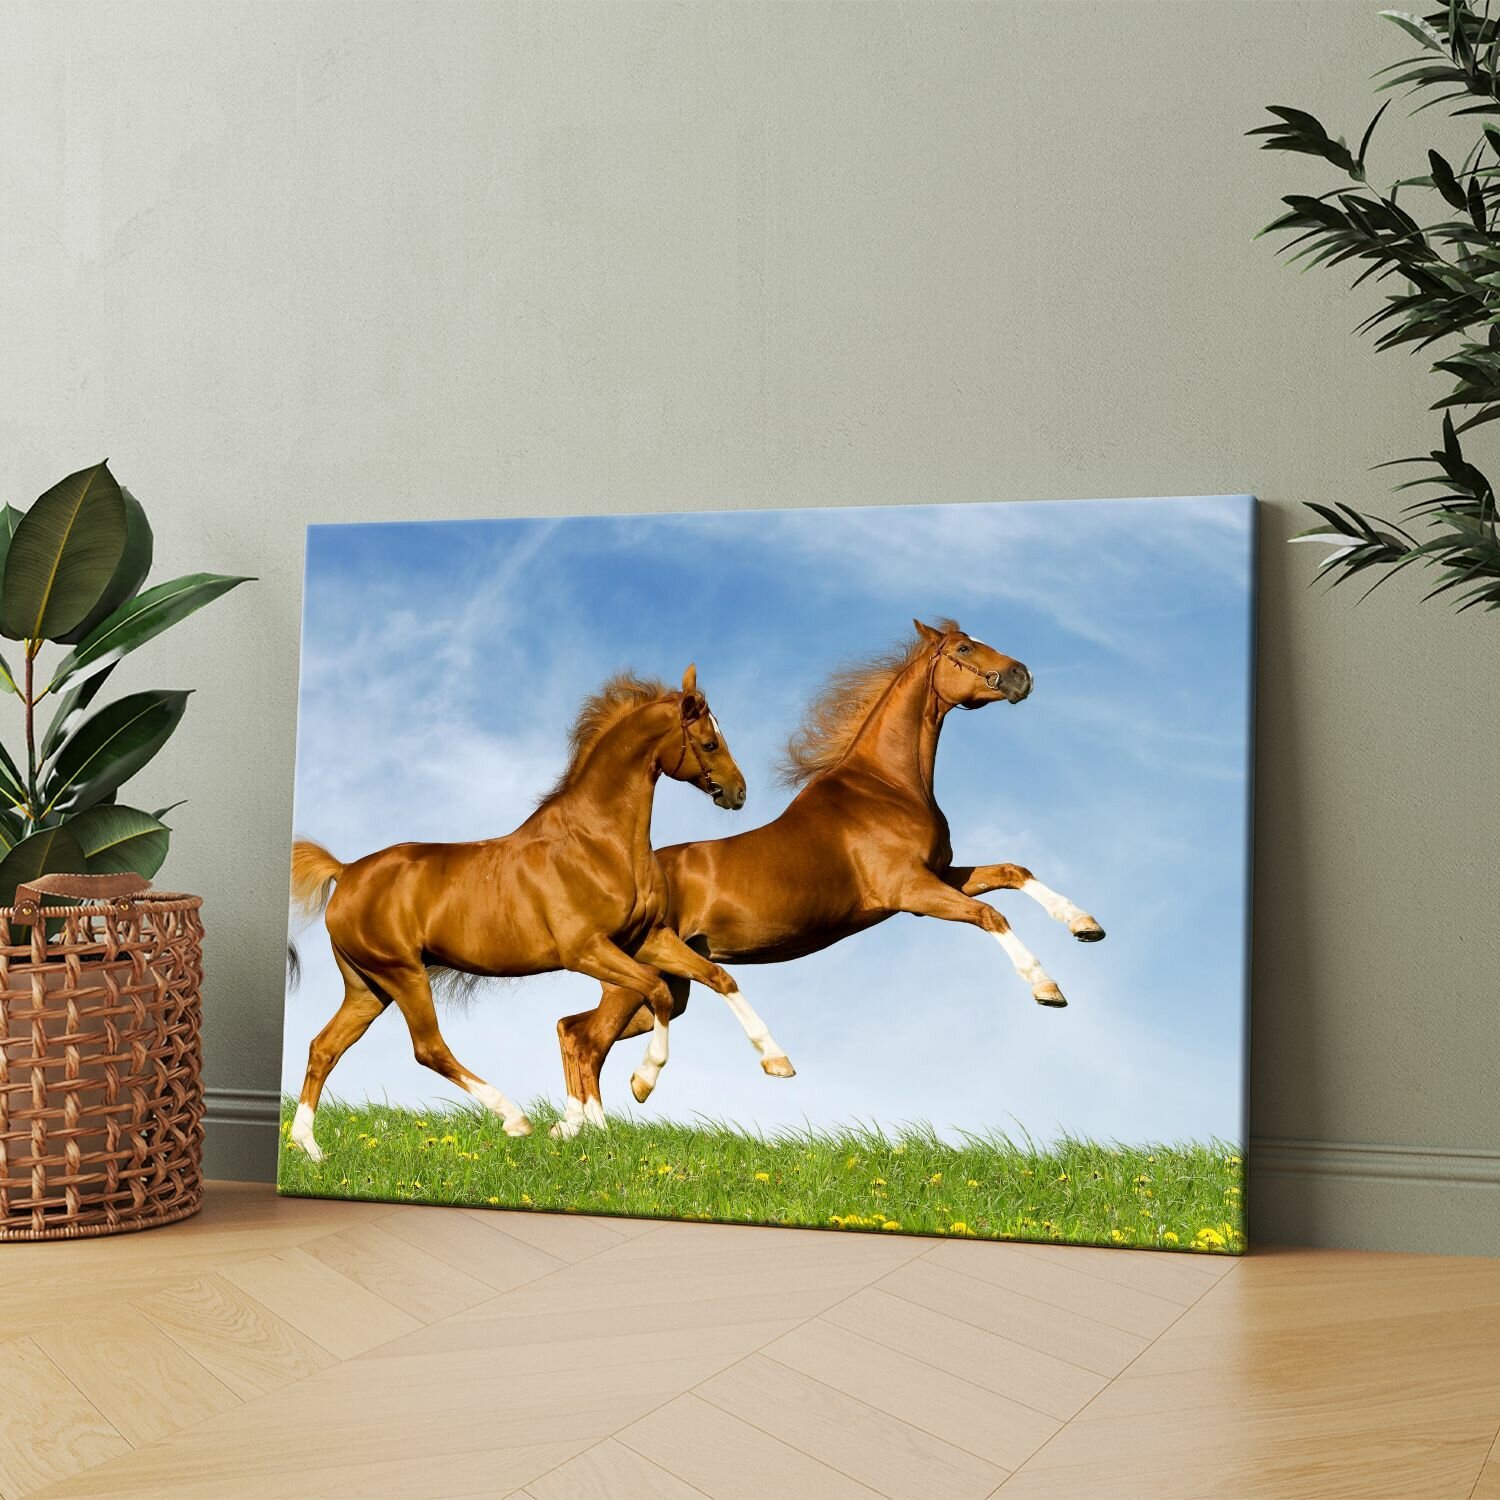 Картина на холсте (две лошади бегут по траве(2)) 20x30 см. Интерьерная, на стену.